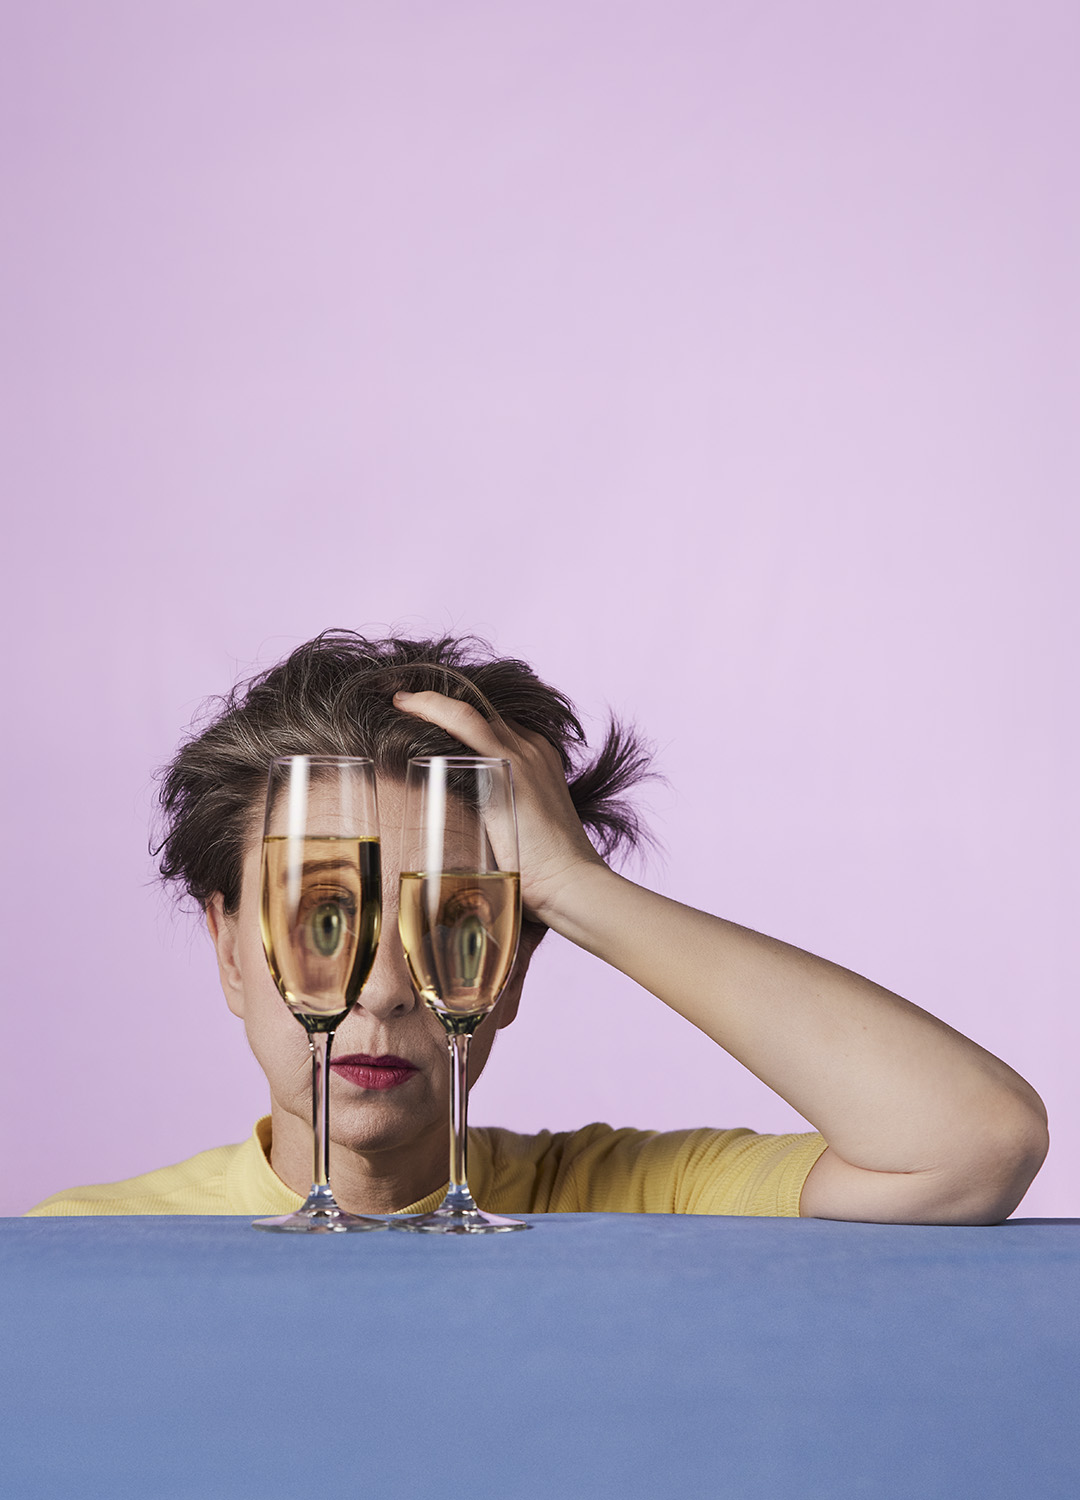 Kvinna sitter vid ett bord med huvudet lutat i handen med två vinglas framför ansiktet som gör att ögonen ser komiskt förvridna ut genom. 